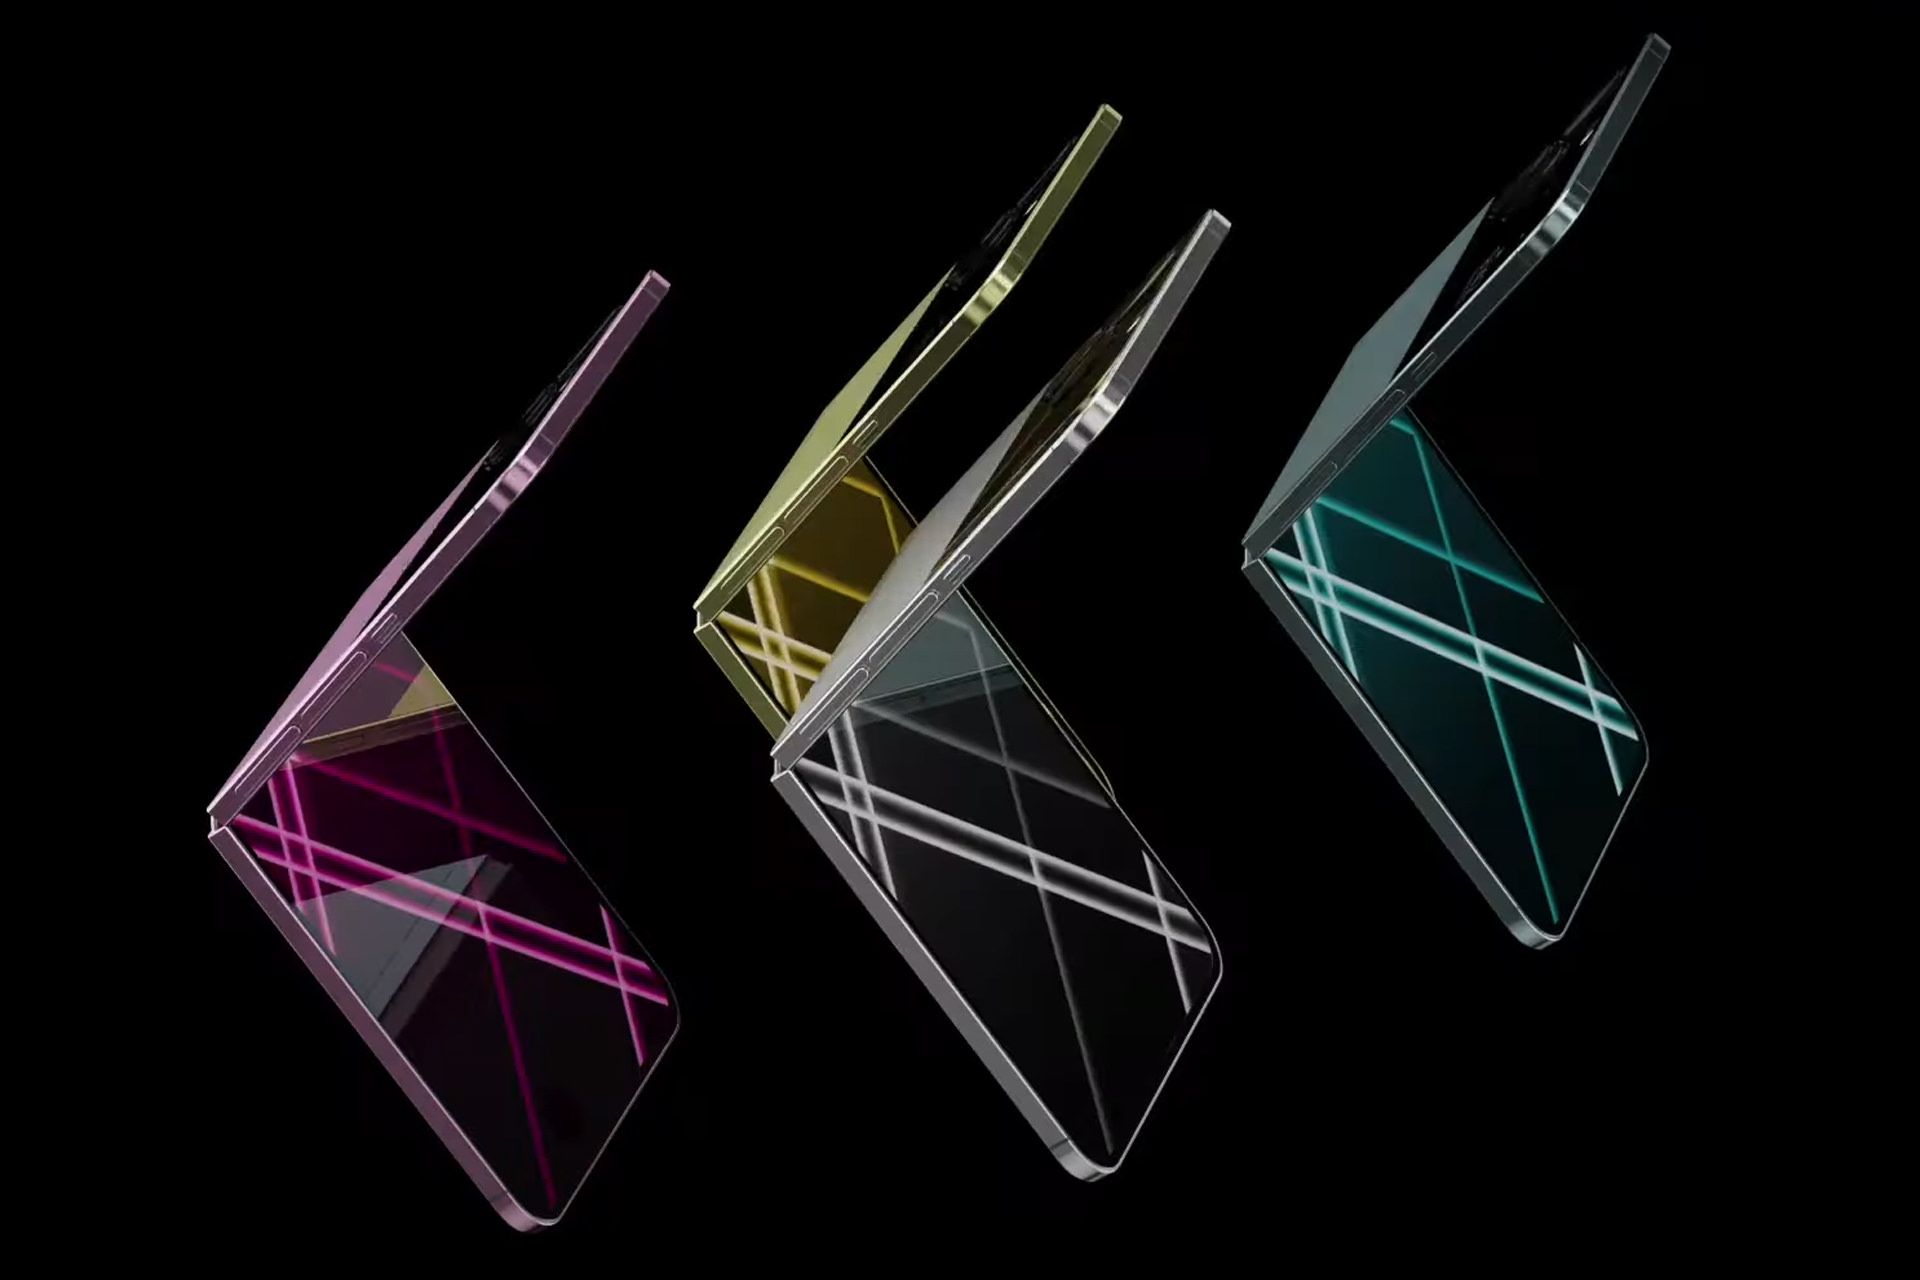 آیفون ایر اپل / Apple iPhone Air تاشدنی در رنگ های مختلف طرح مفهومی